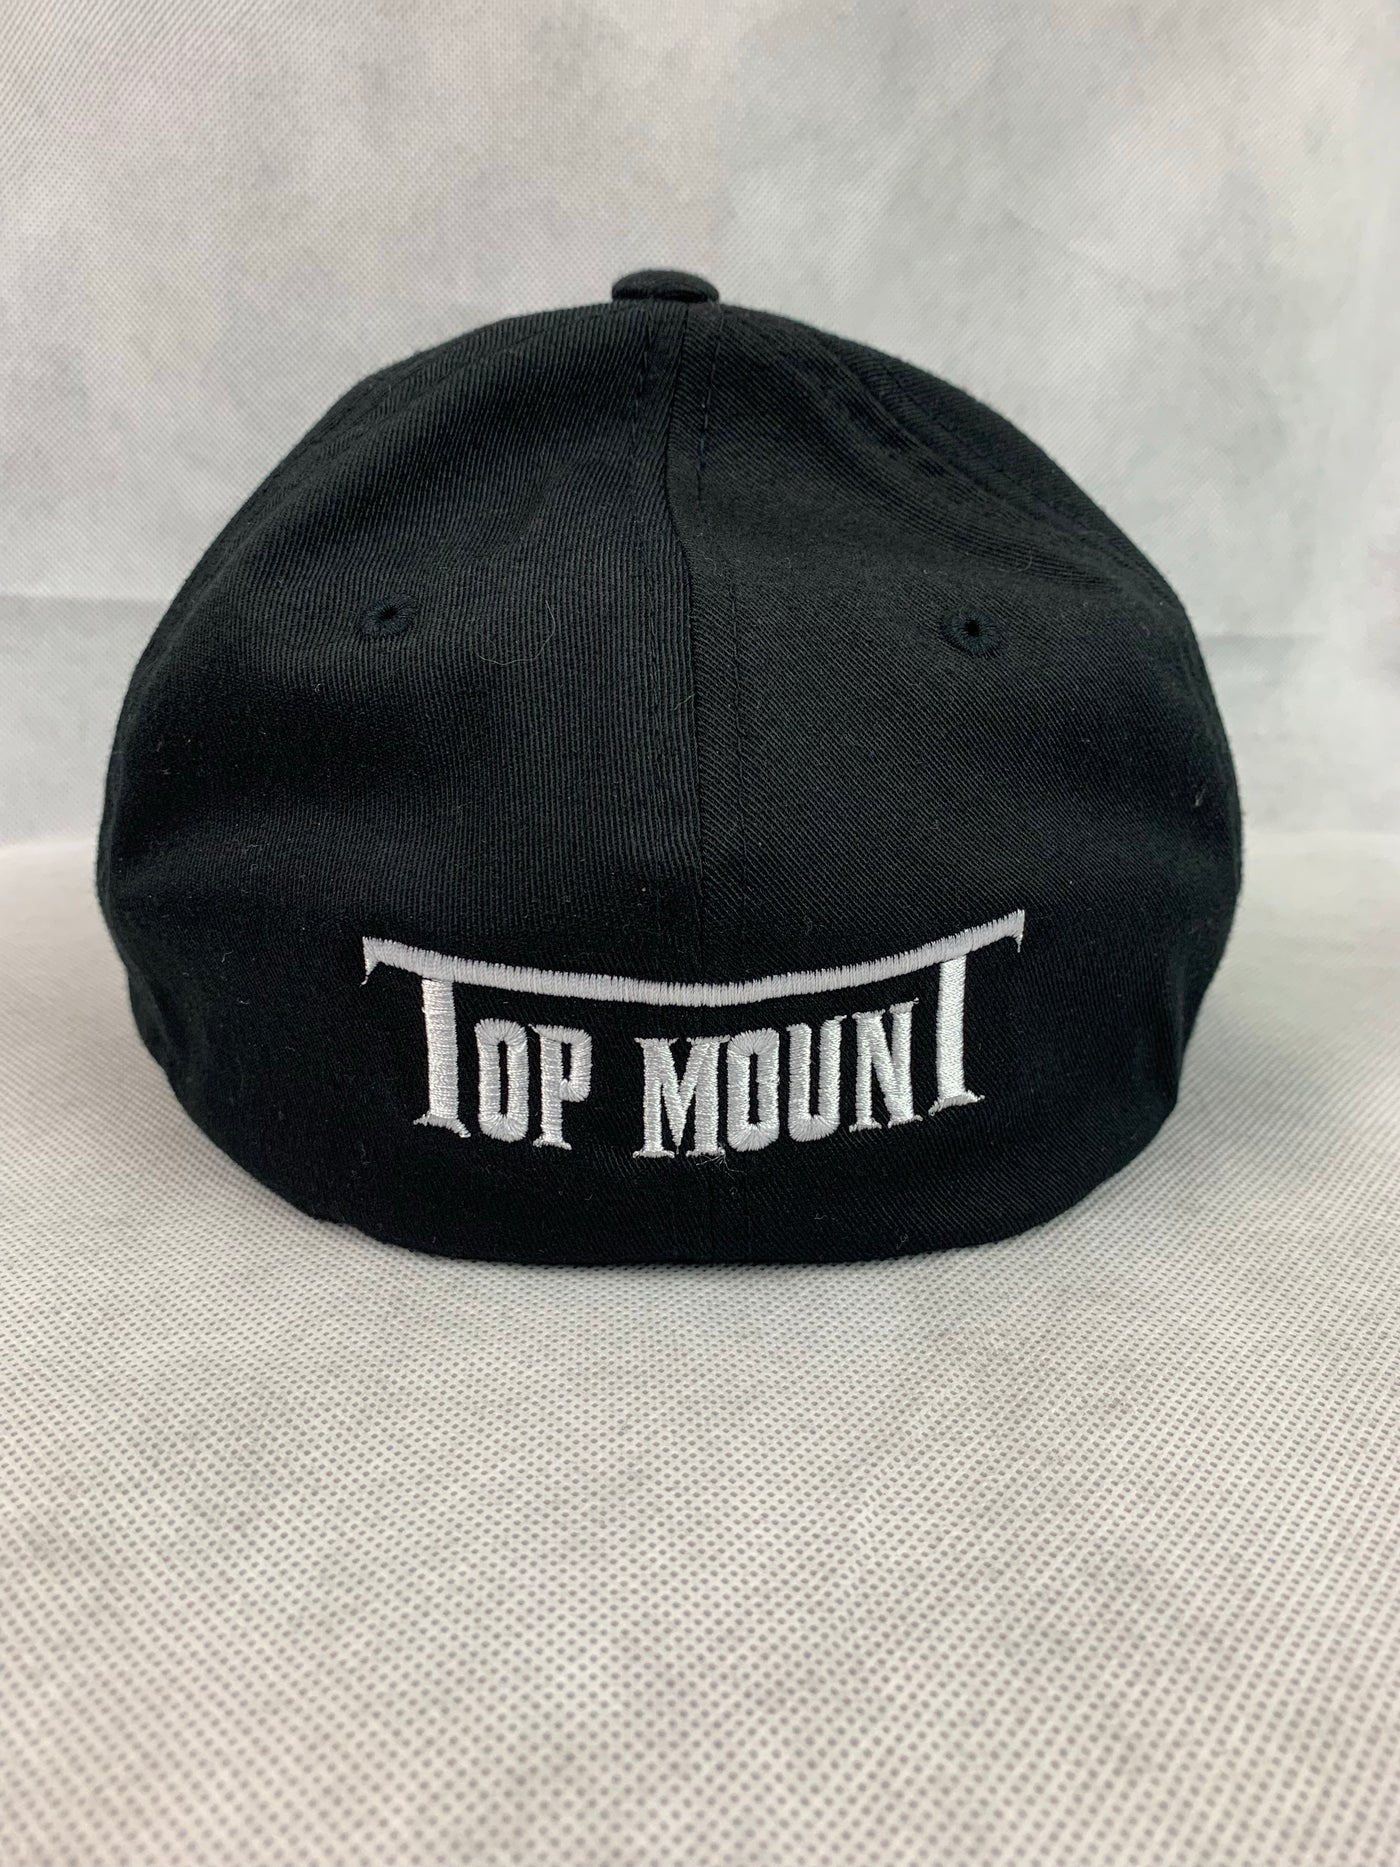 Top Mount Flex Fit Hat